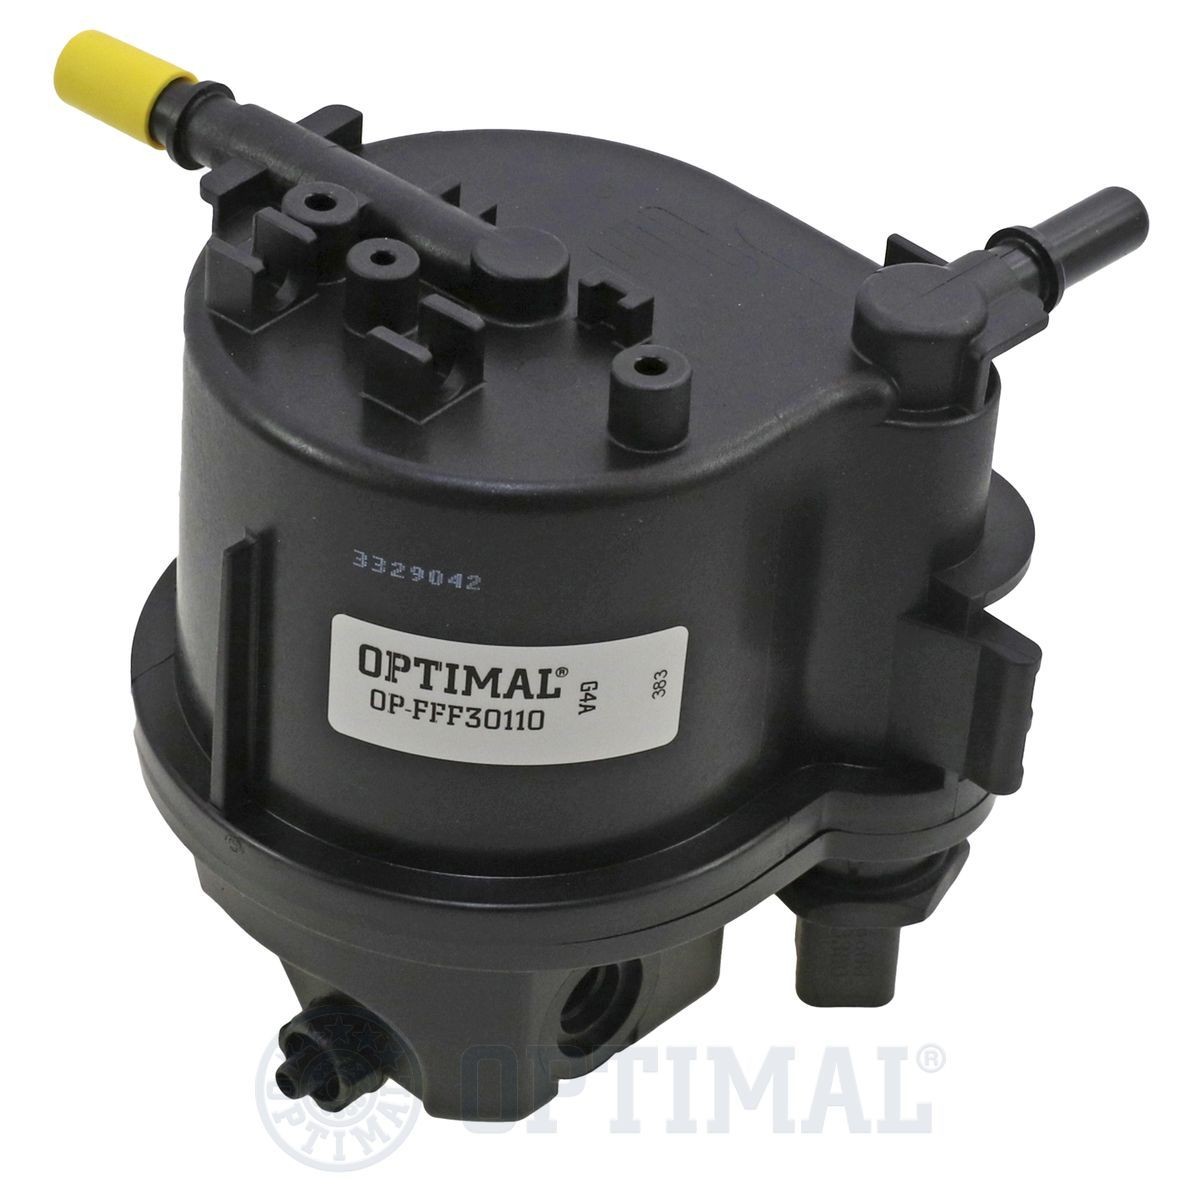 OPTIMAL OP-FFF30110 Fuel filter 1334 772